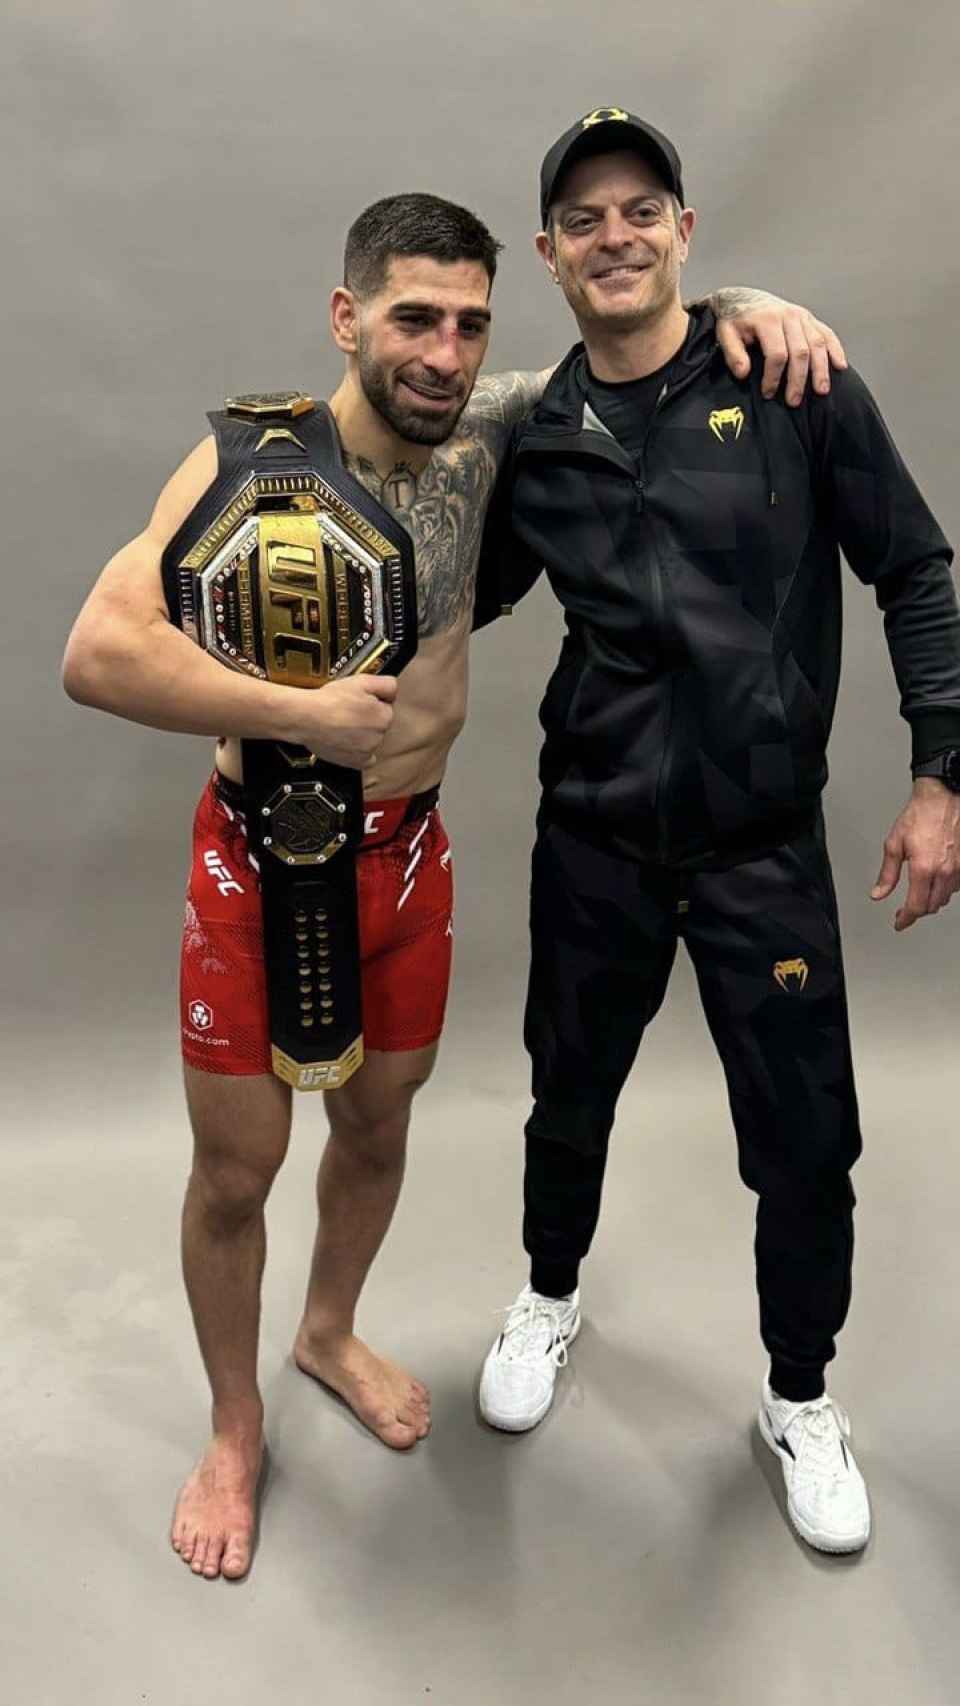 El doctor Aldo posando con Ilia Topuria tras imponerse el 17 de febrero a Alexander Volkanovski, en el campeonato del mundo del peso pluma de la UFC.